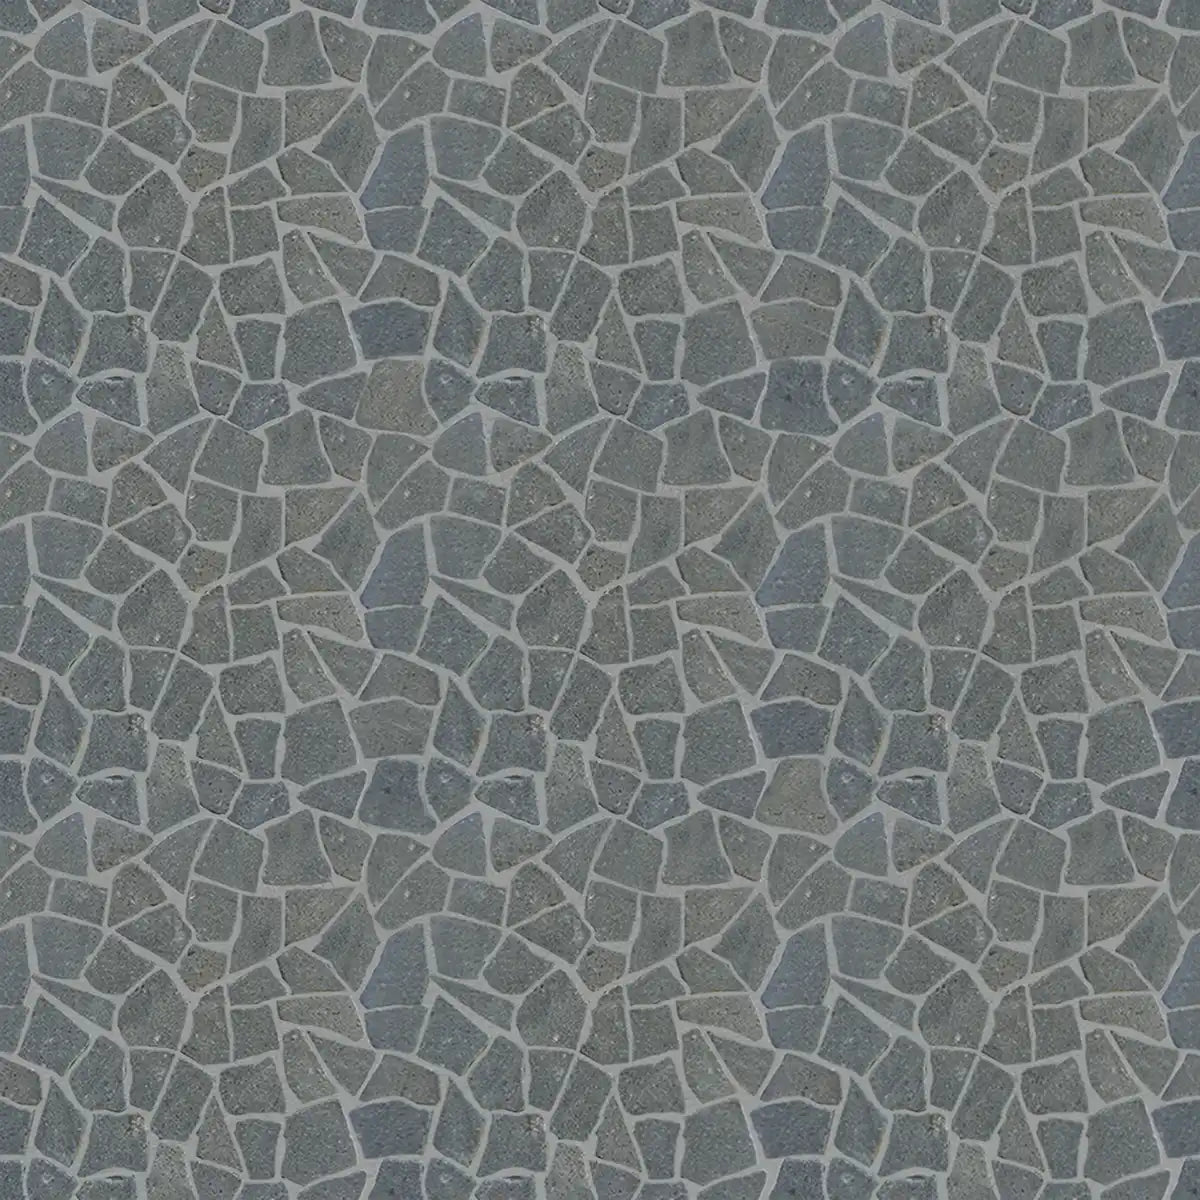 Lava Stone Mosaic Tile, Random Mosaic Wall Tile